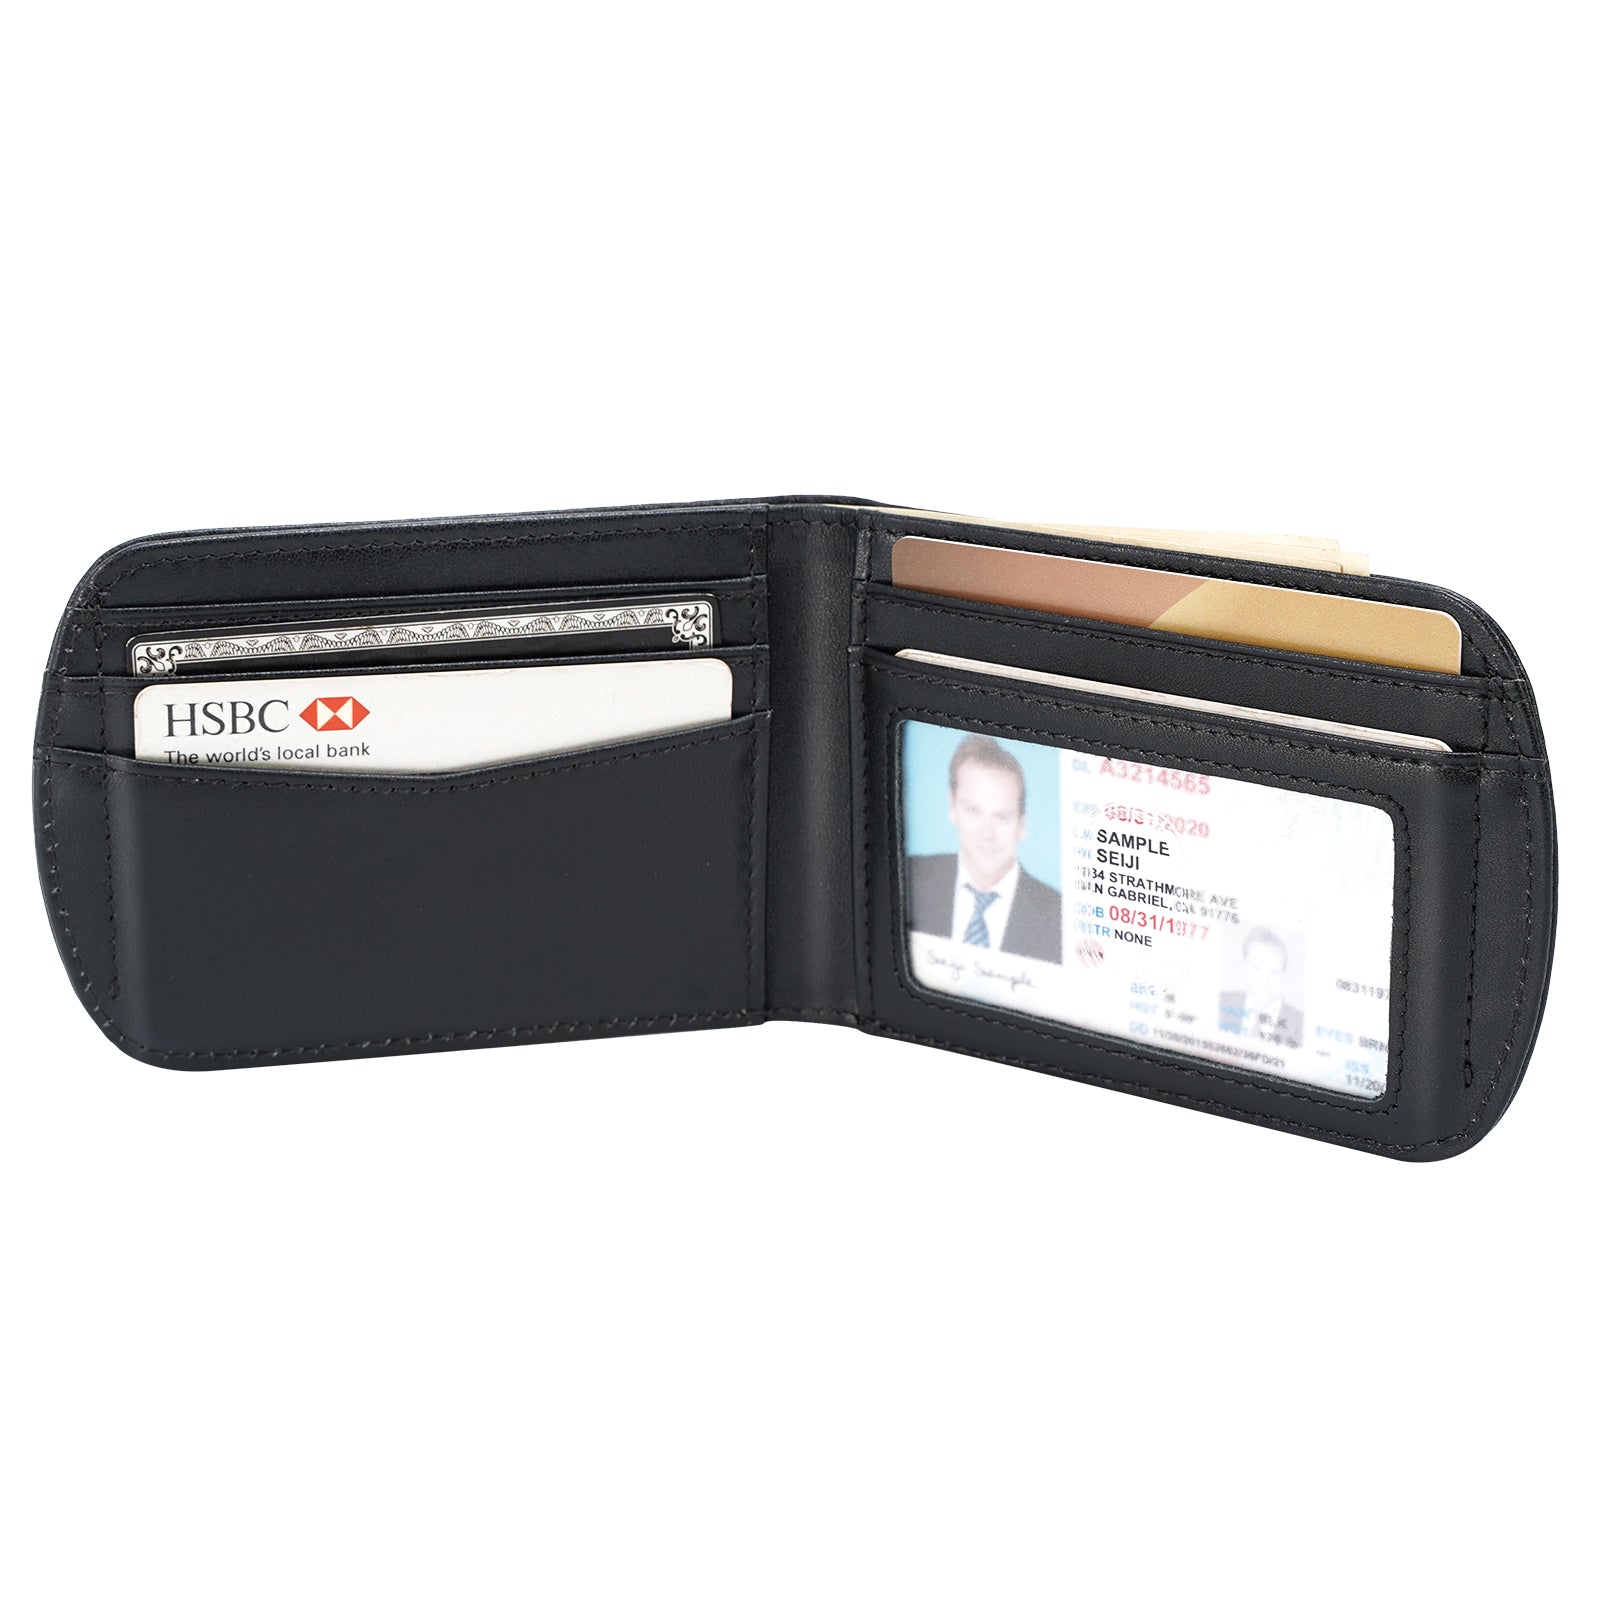 RFID Wallet 6 Slot Bifold Card Holder - RFID Blocking Wallets for Men